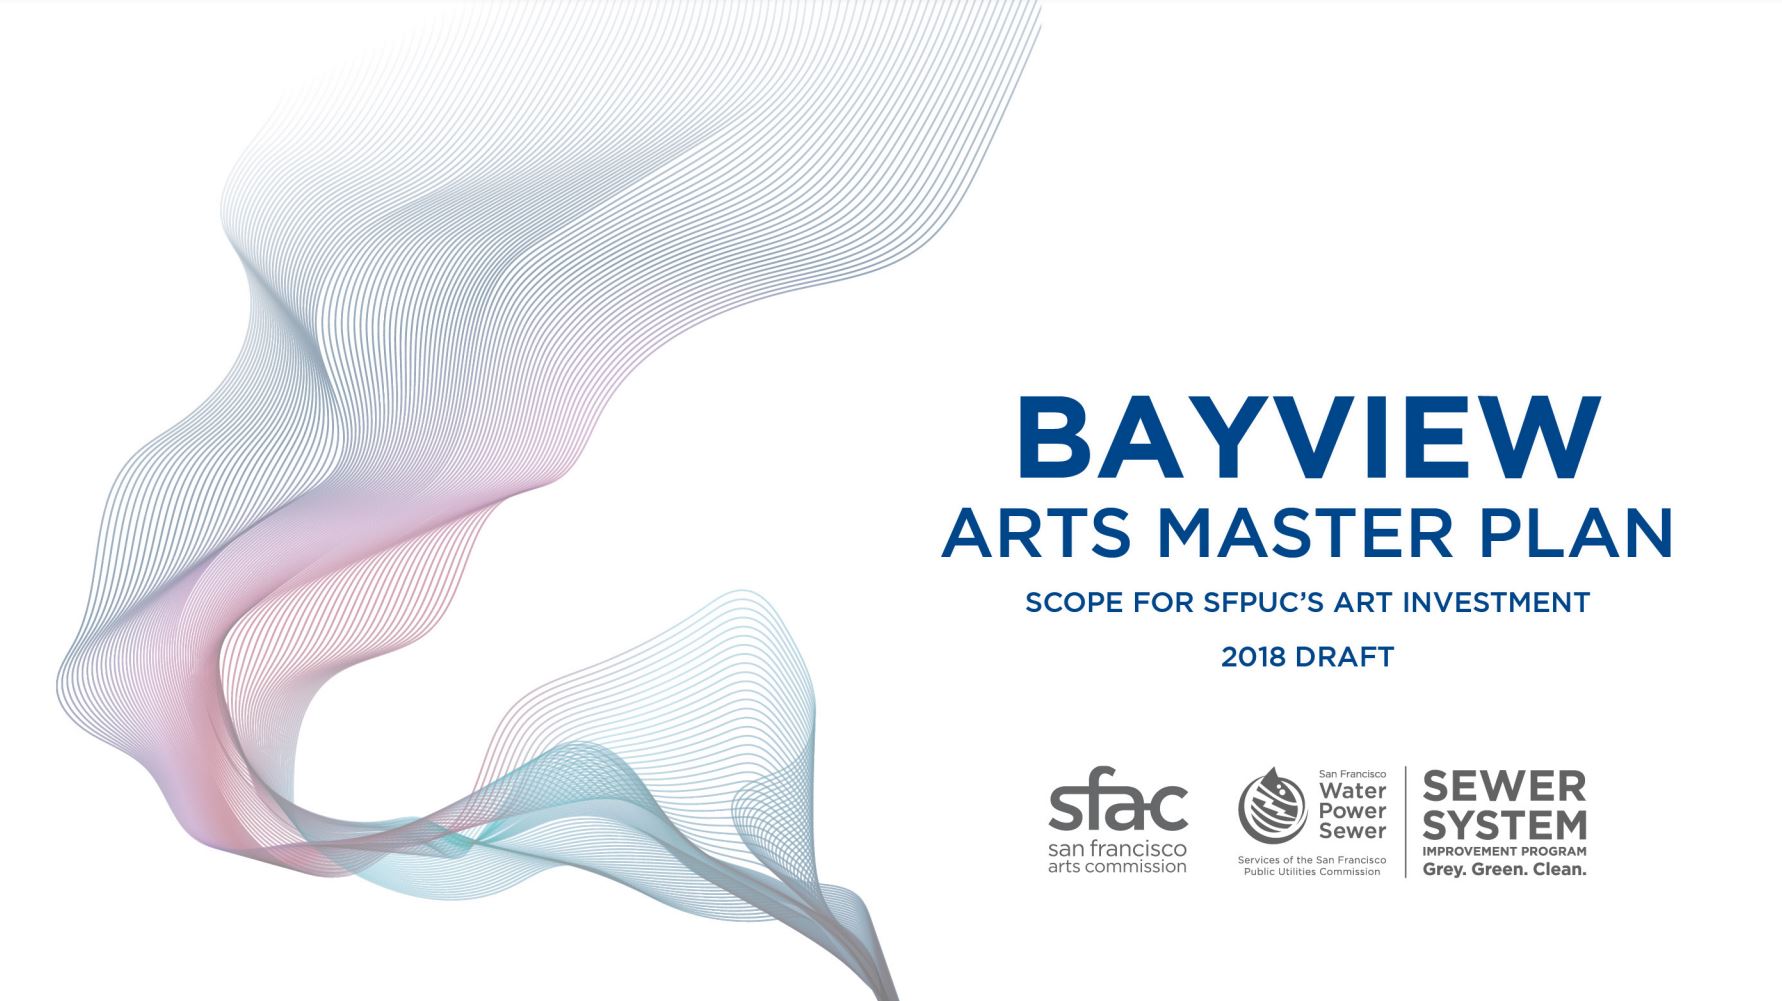 Bayview Arts Master Plan